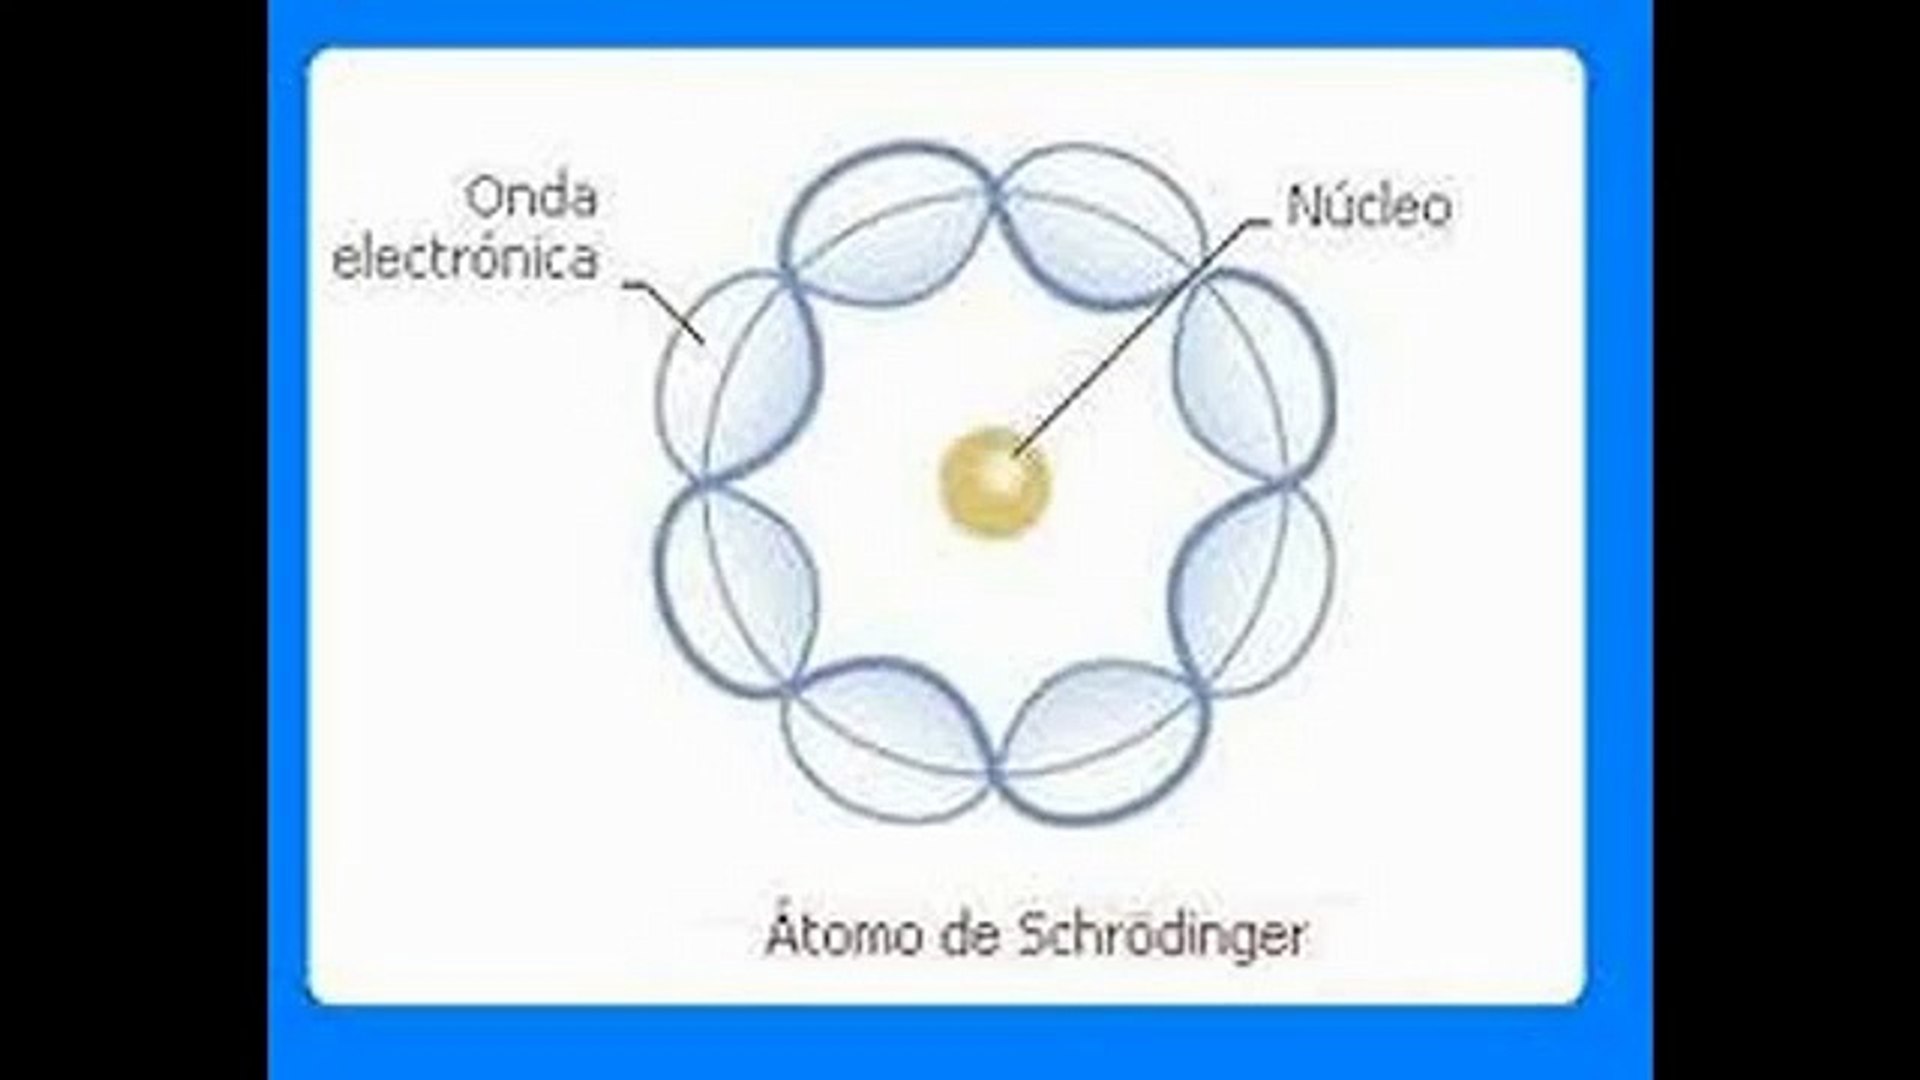 modelo atomico de schrodinger - video Dailymotion